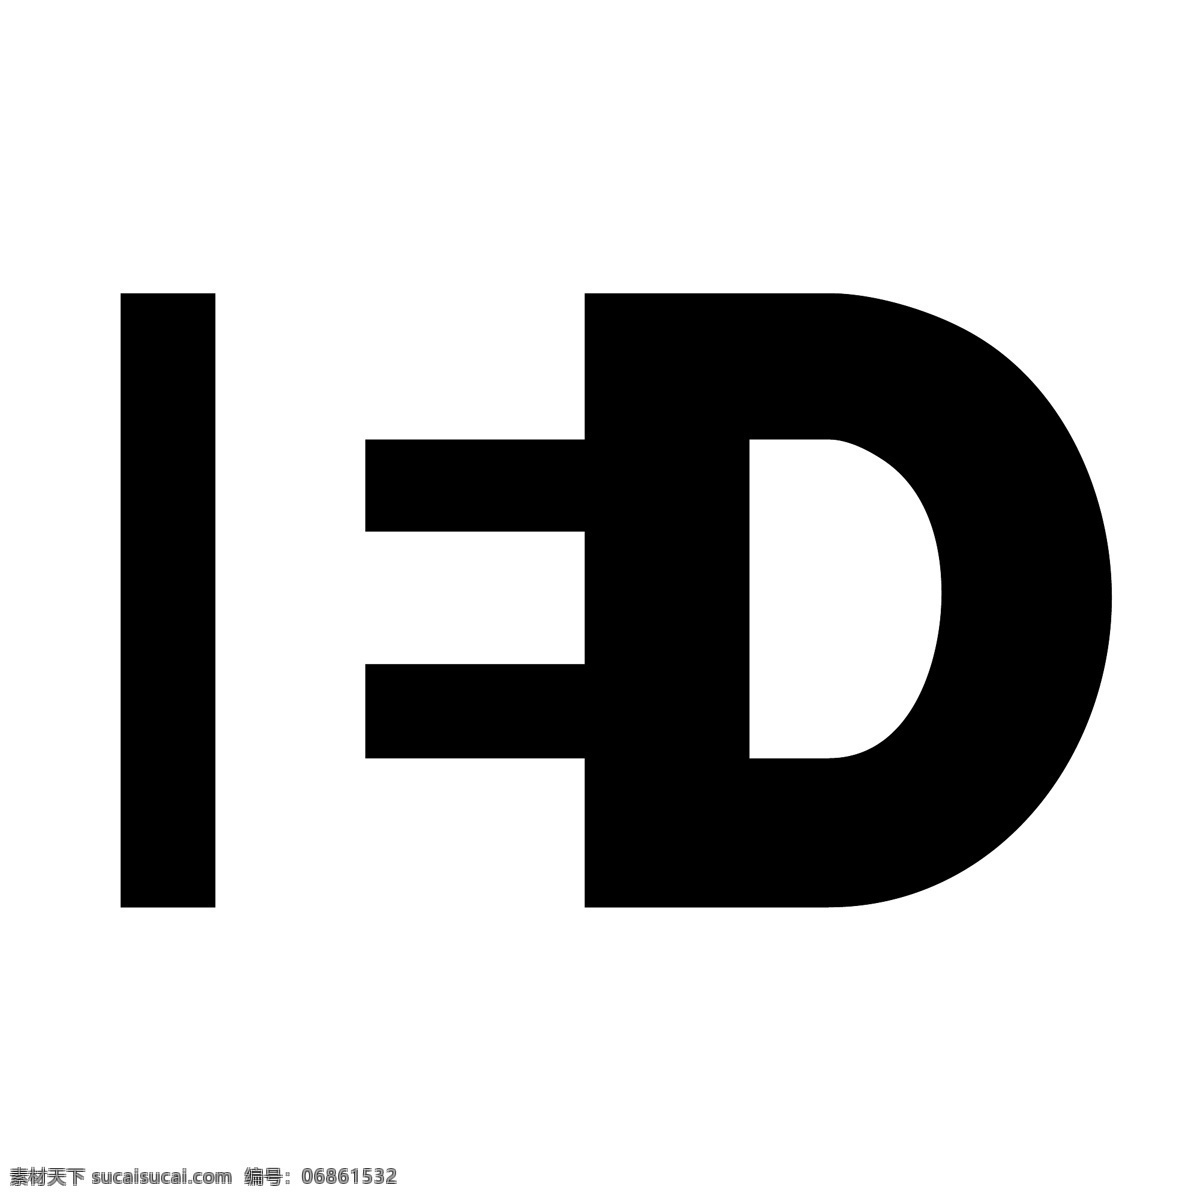 ed免费下载 标识 公司 免费 品牌 品牌标识 商标 矢量标志下载 免费矢量标识 矢量 psd源文件 logo设计